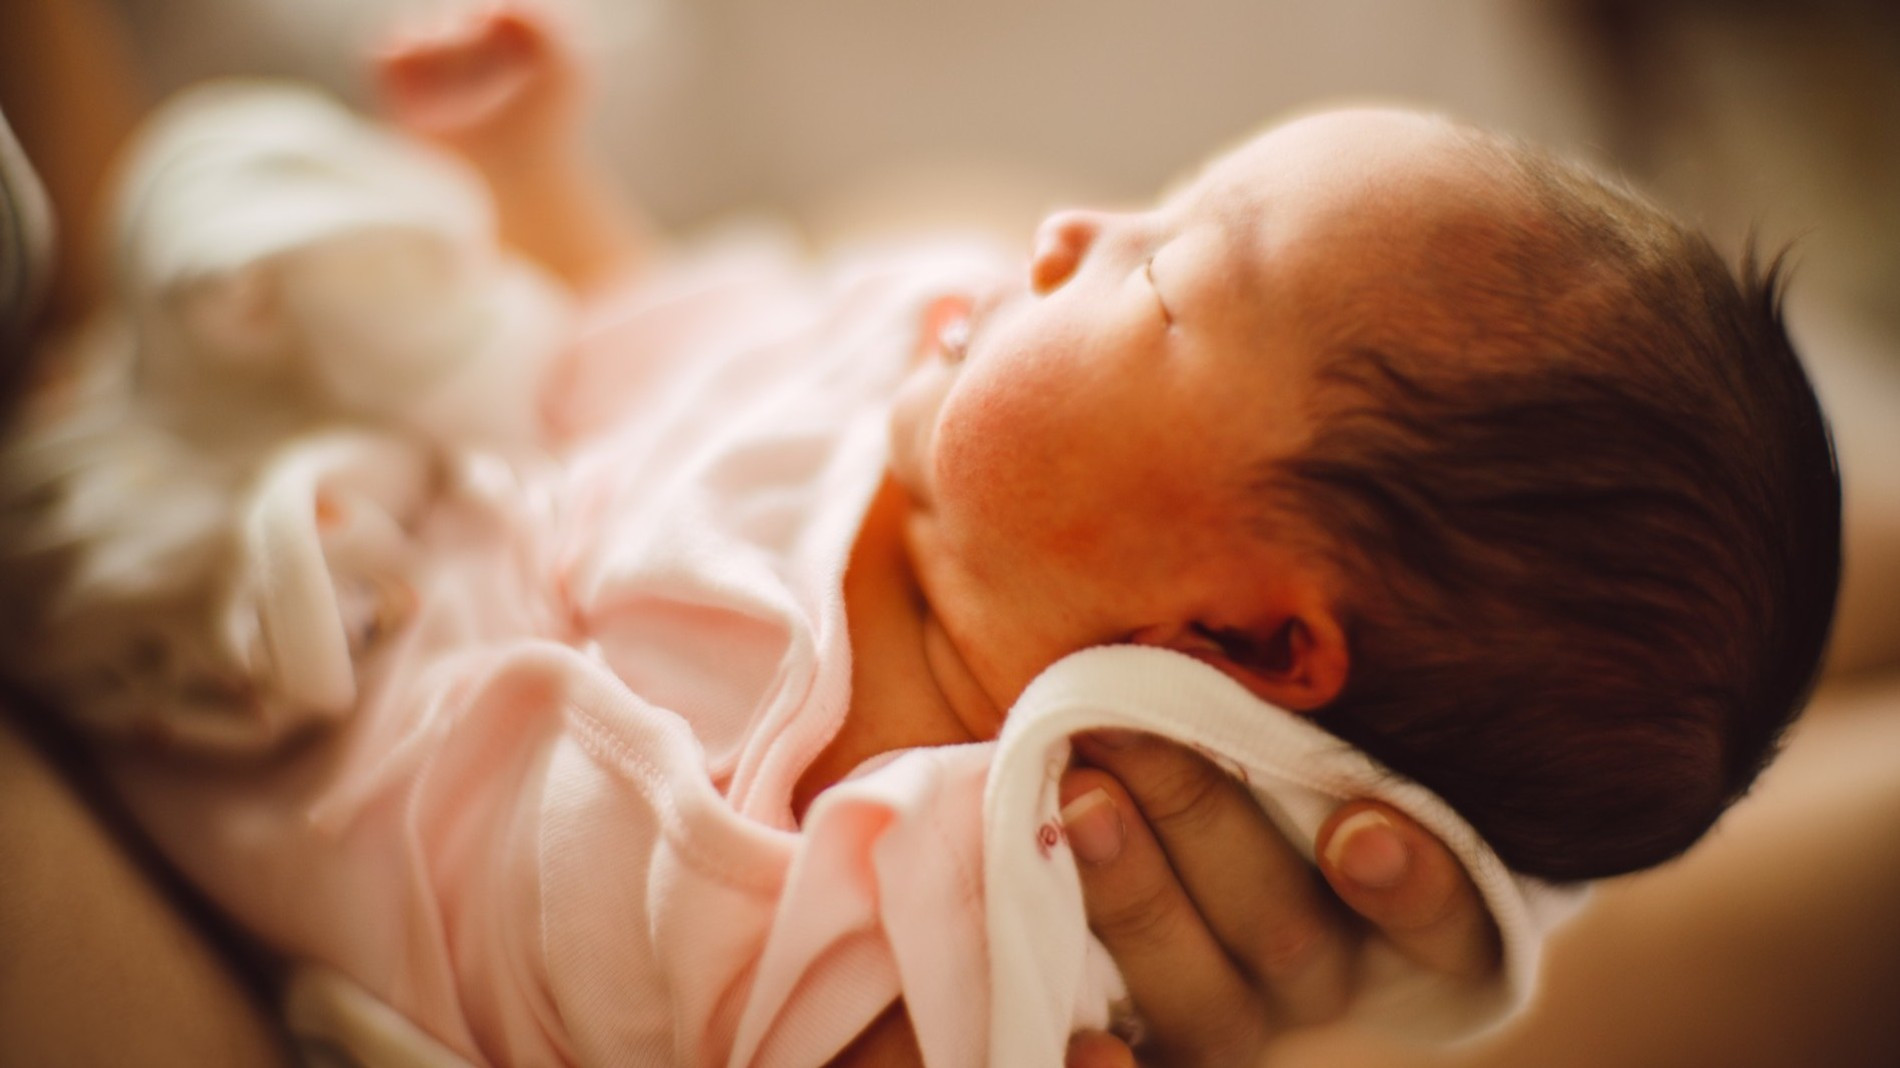 Младенец
Фото: Getty Images